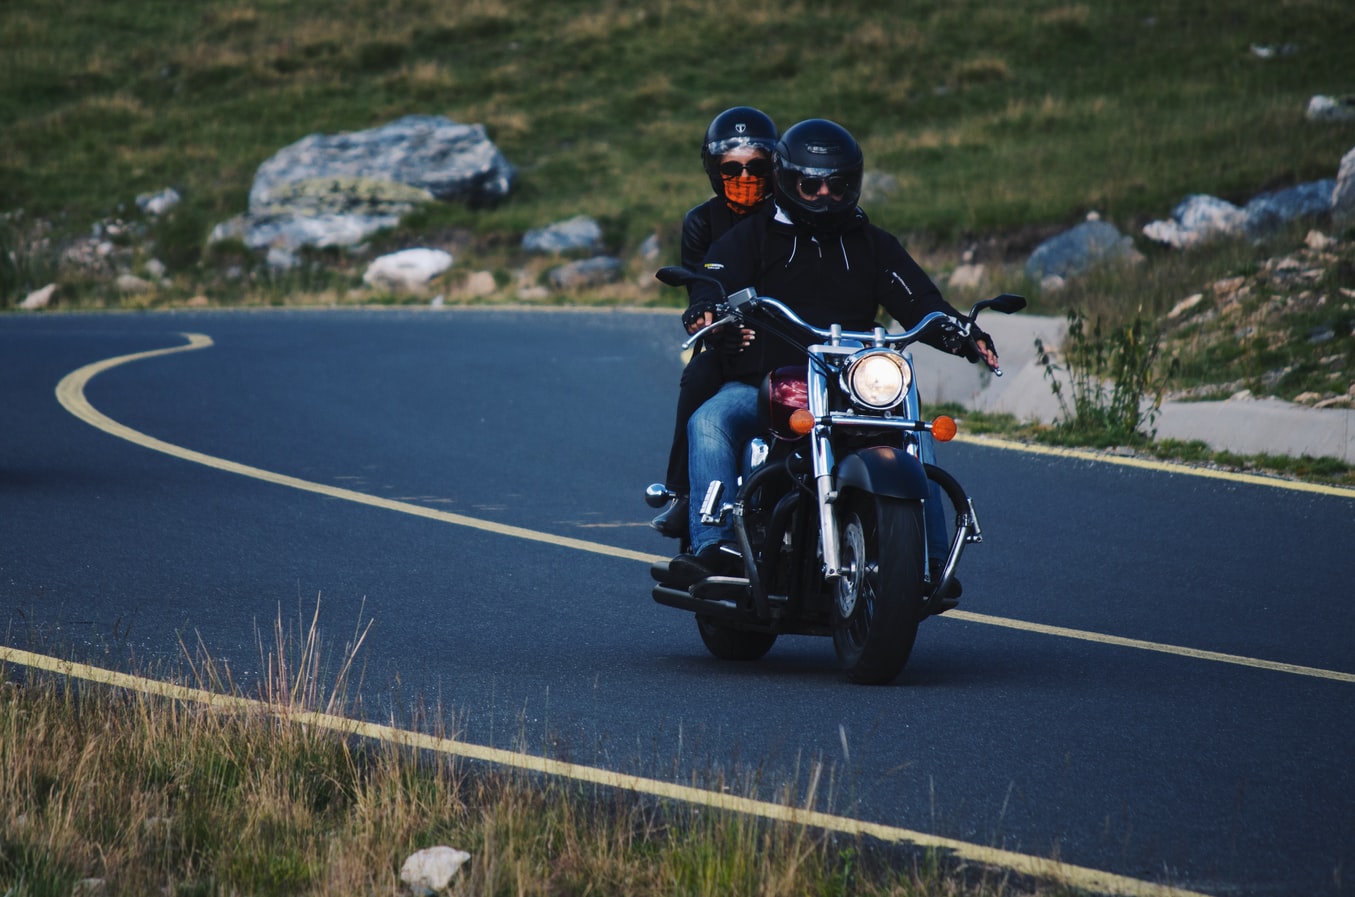 Lire la suite à propos de l’article Le bonheur de la conduite d’une moto et les dangers encourus